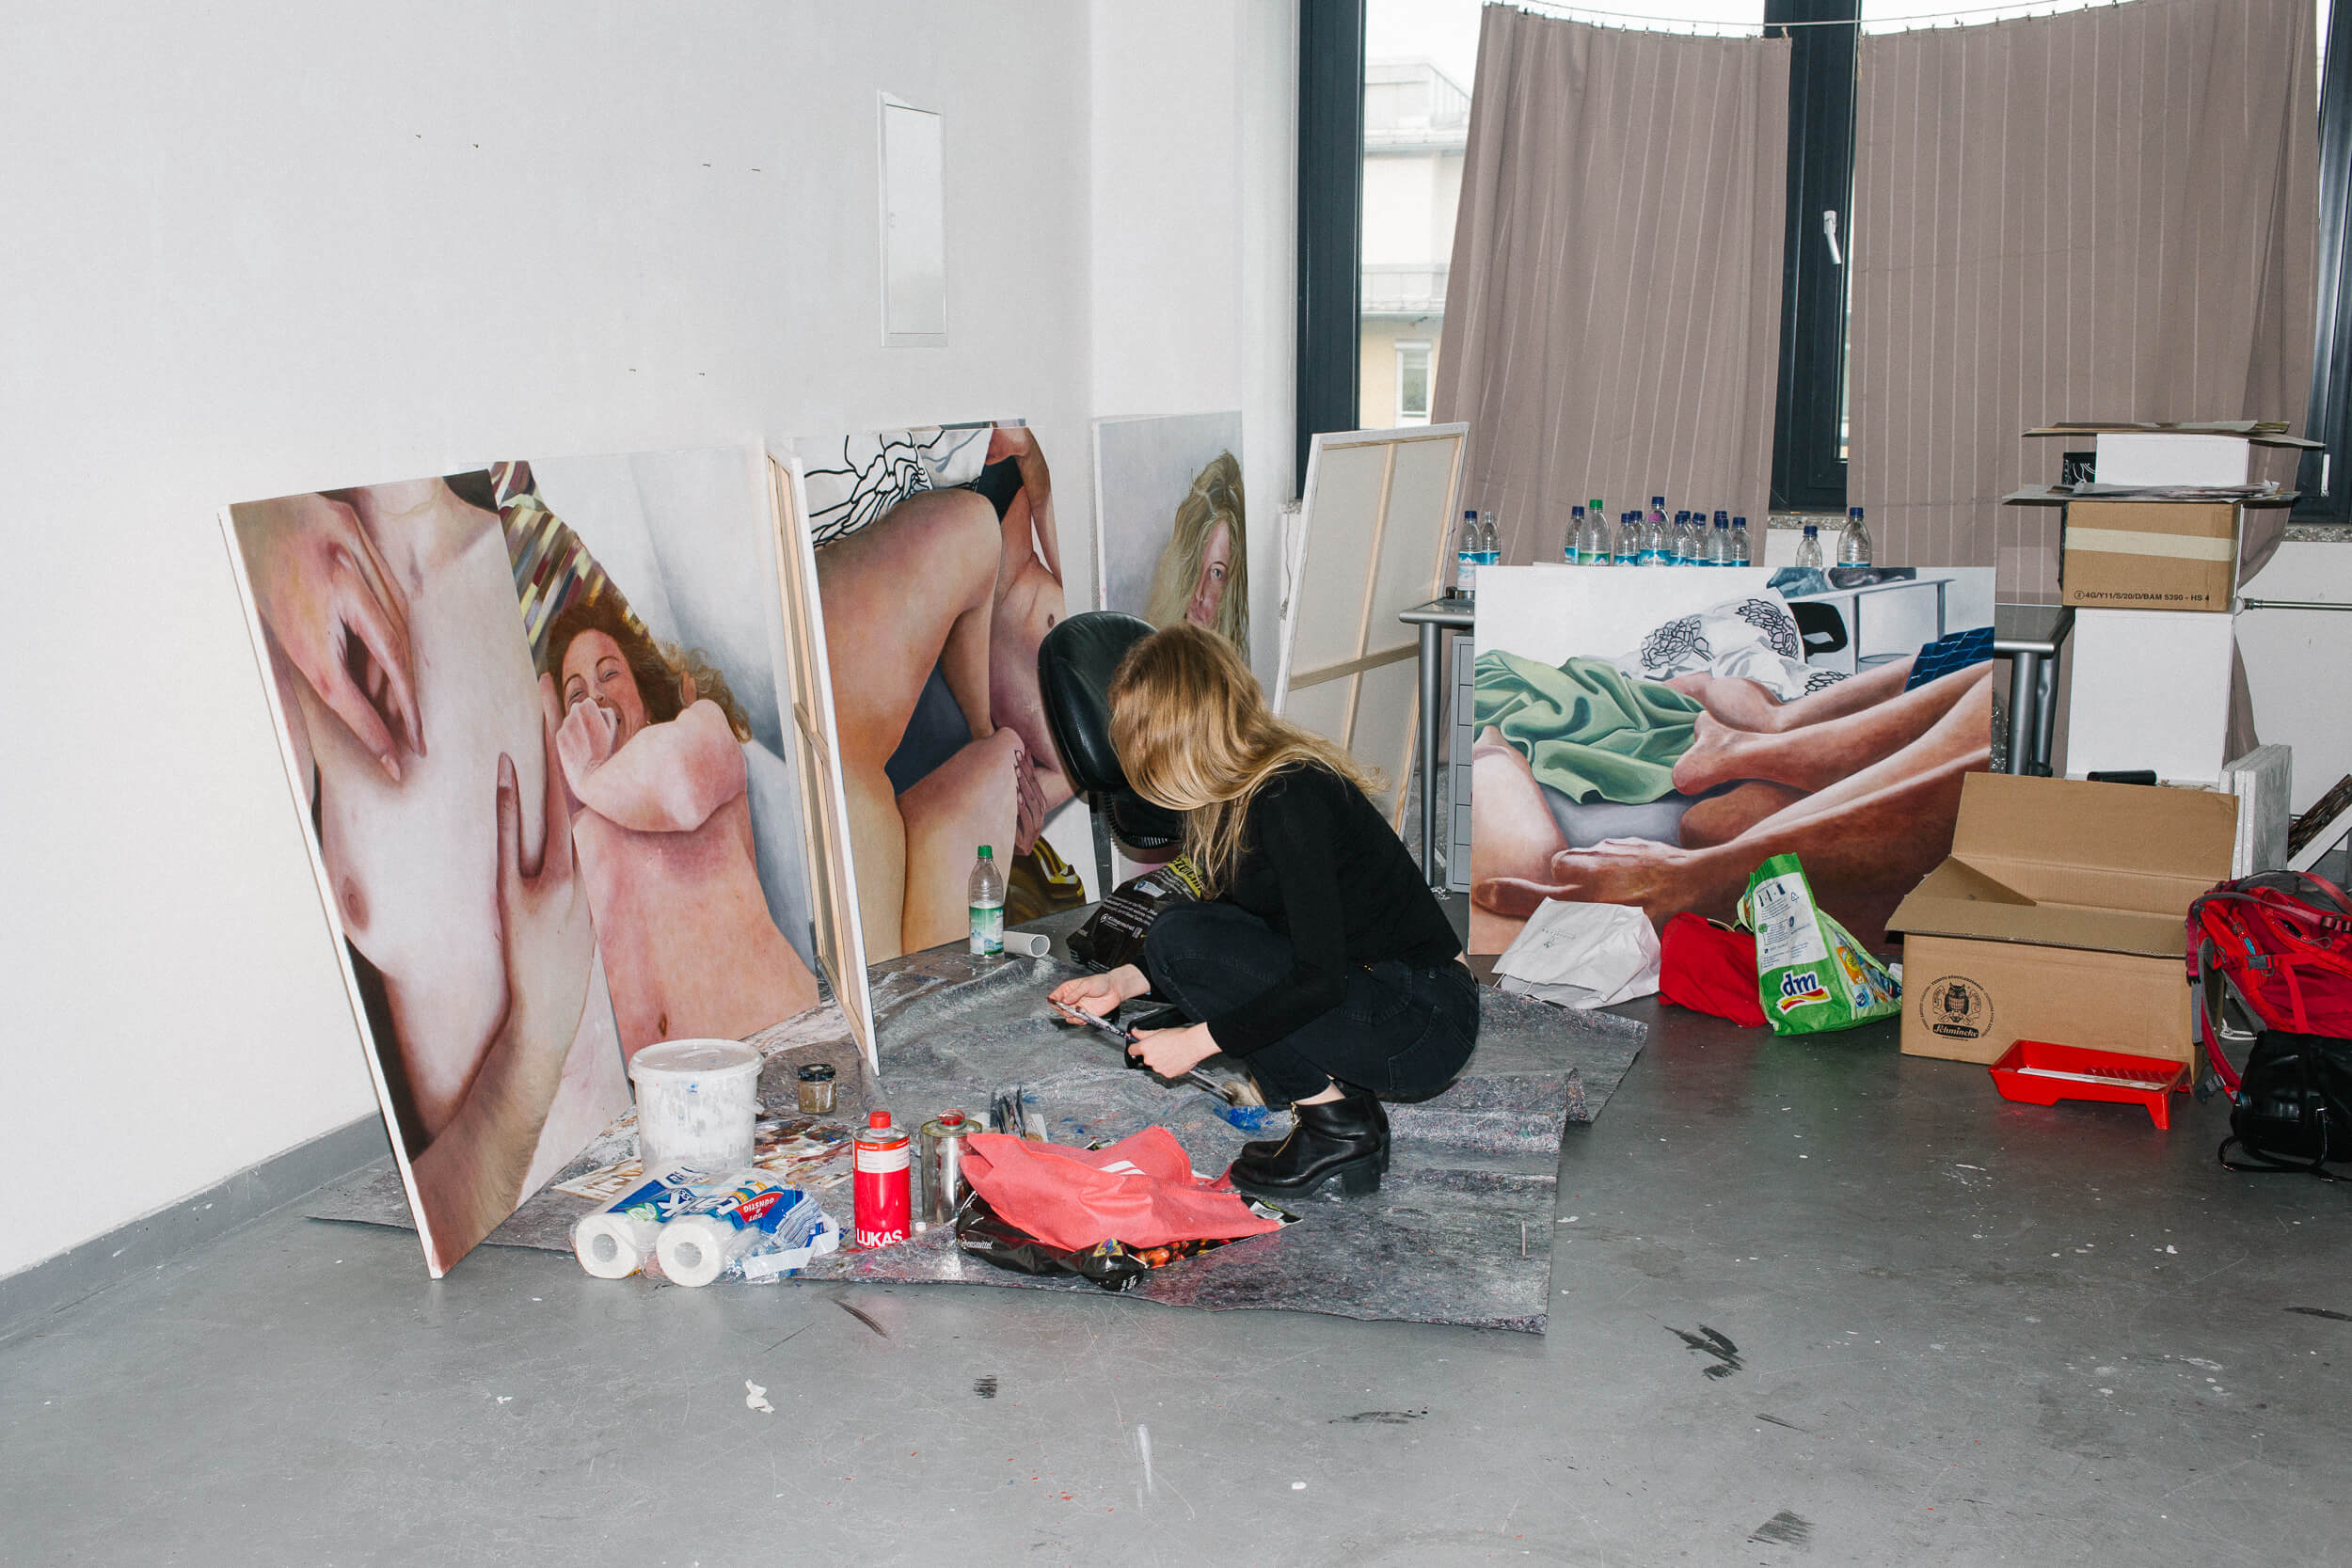 Die künstlerin kniet vor ihren Gemälden, die auf dem Boden an die Wand gelehnt sind. Sie mischt gerade Farben an.